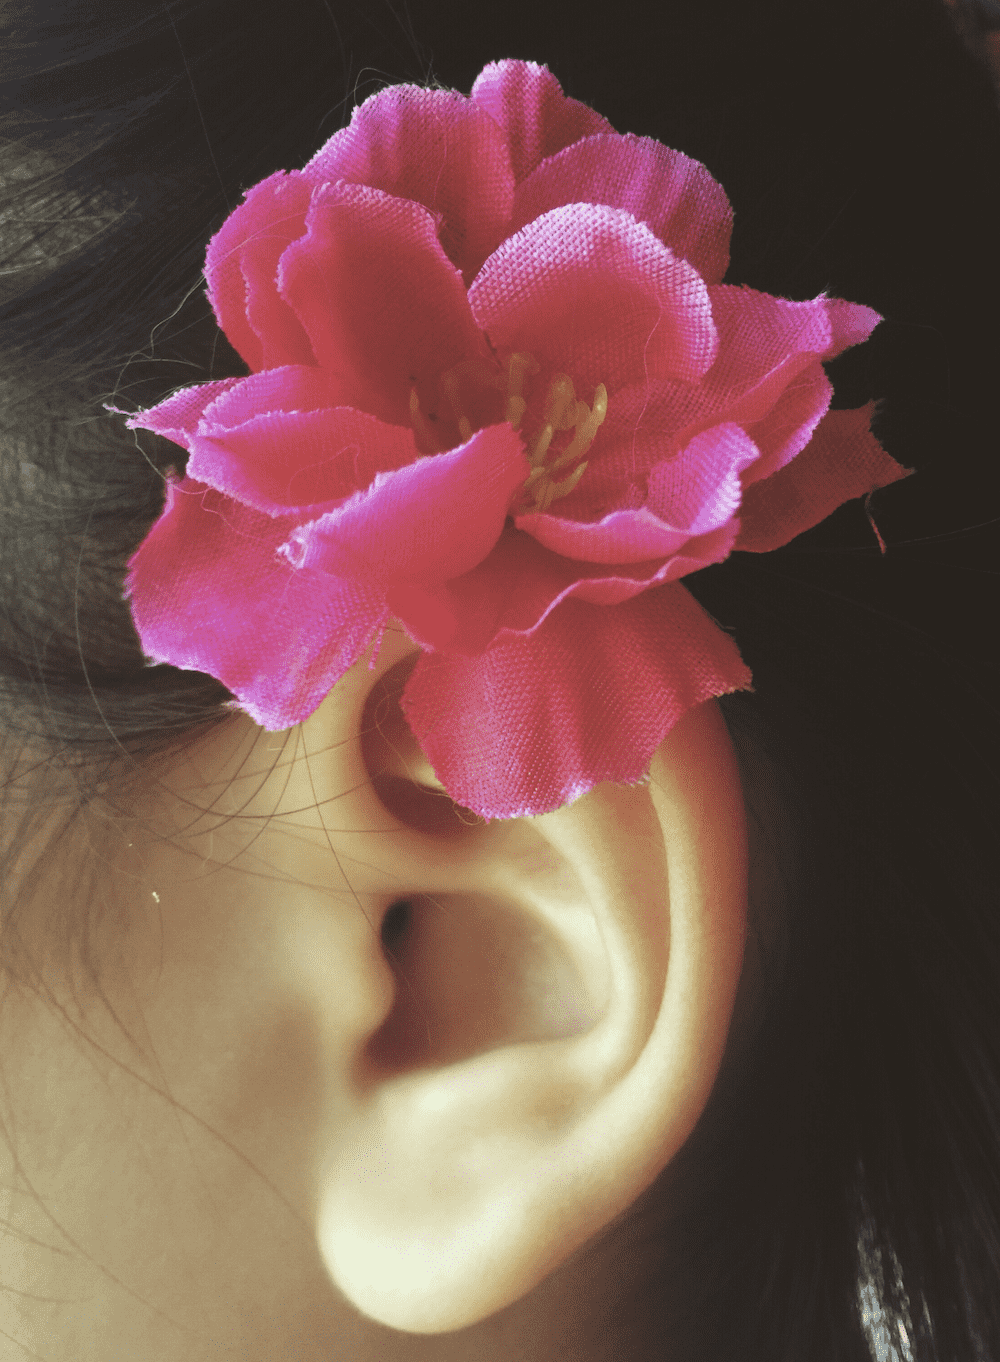 فيزيتا مجانية | 5 أدوية يمكن أن تسبب ضعف السمع أو  طنين الاذن.. فما هي؟